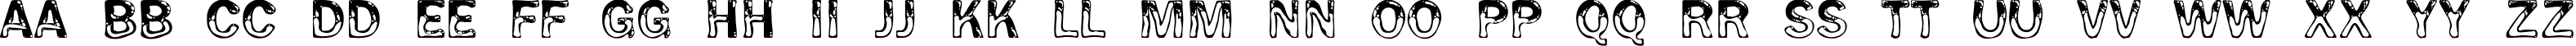 Пример написания английского алфавита шрифтом Wet Pet